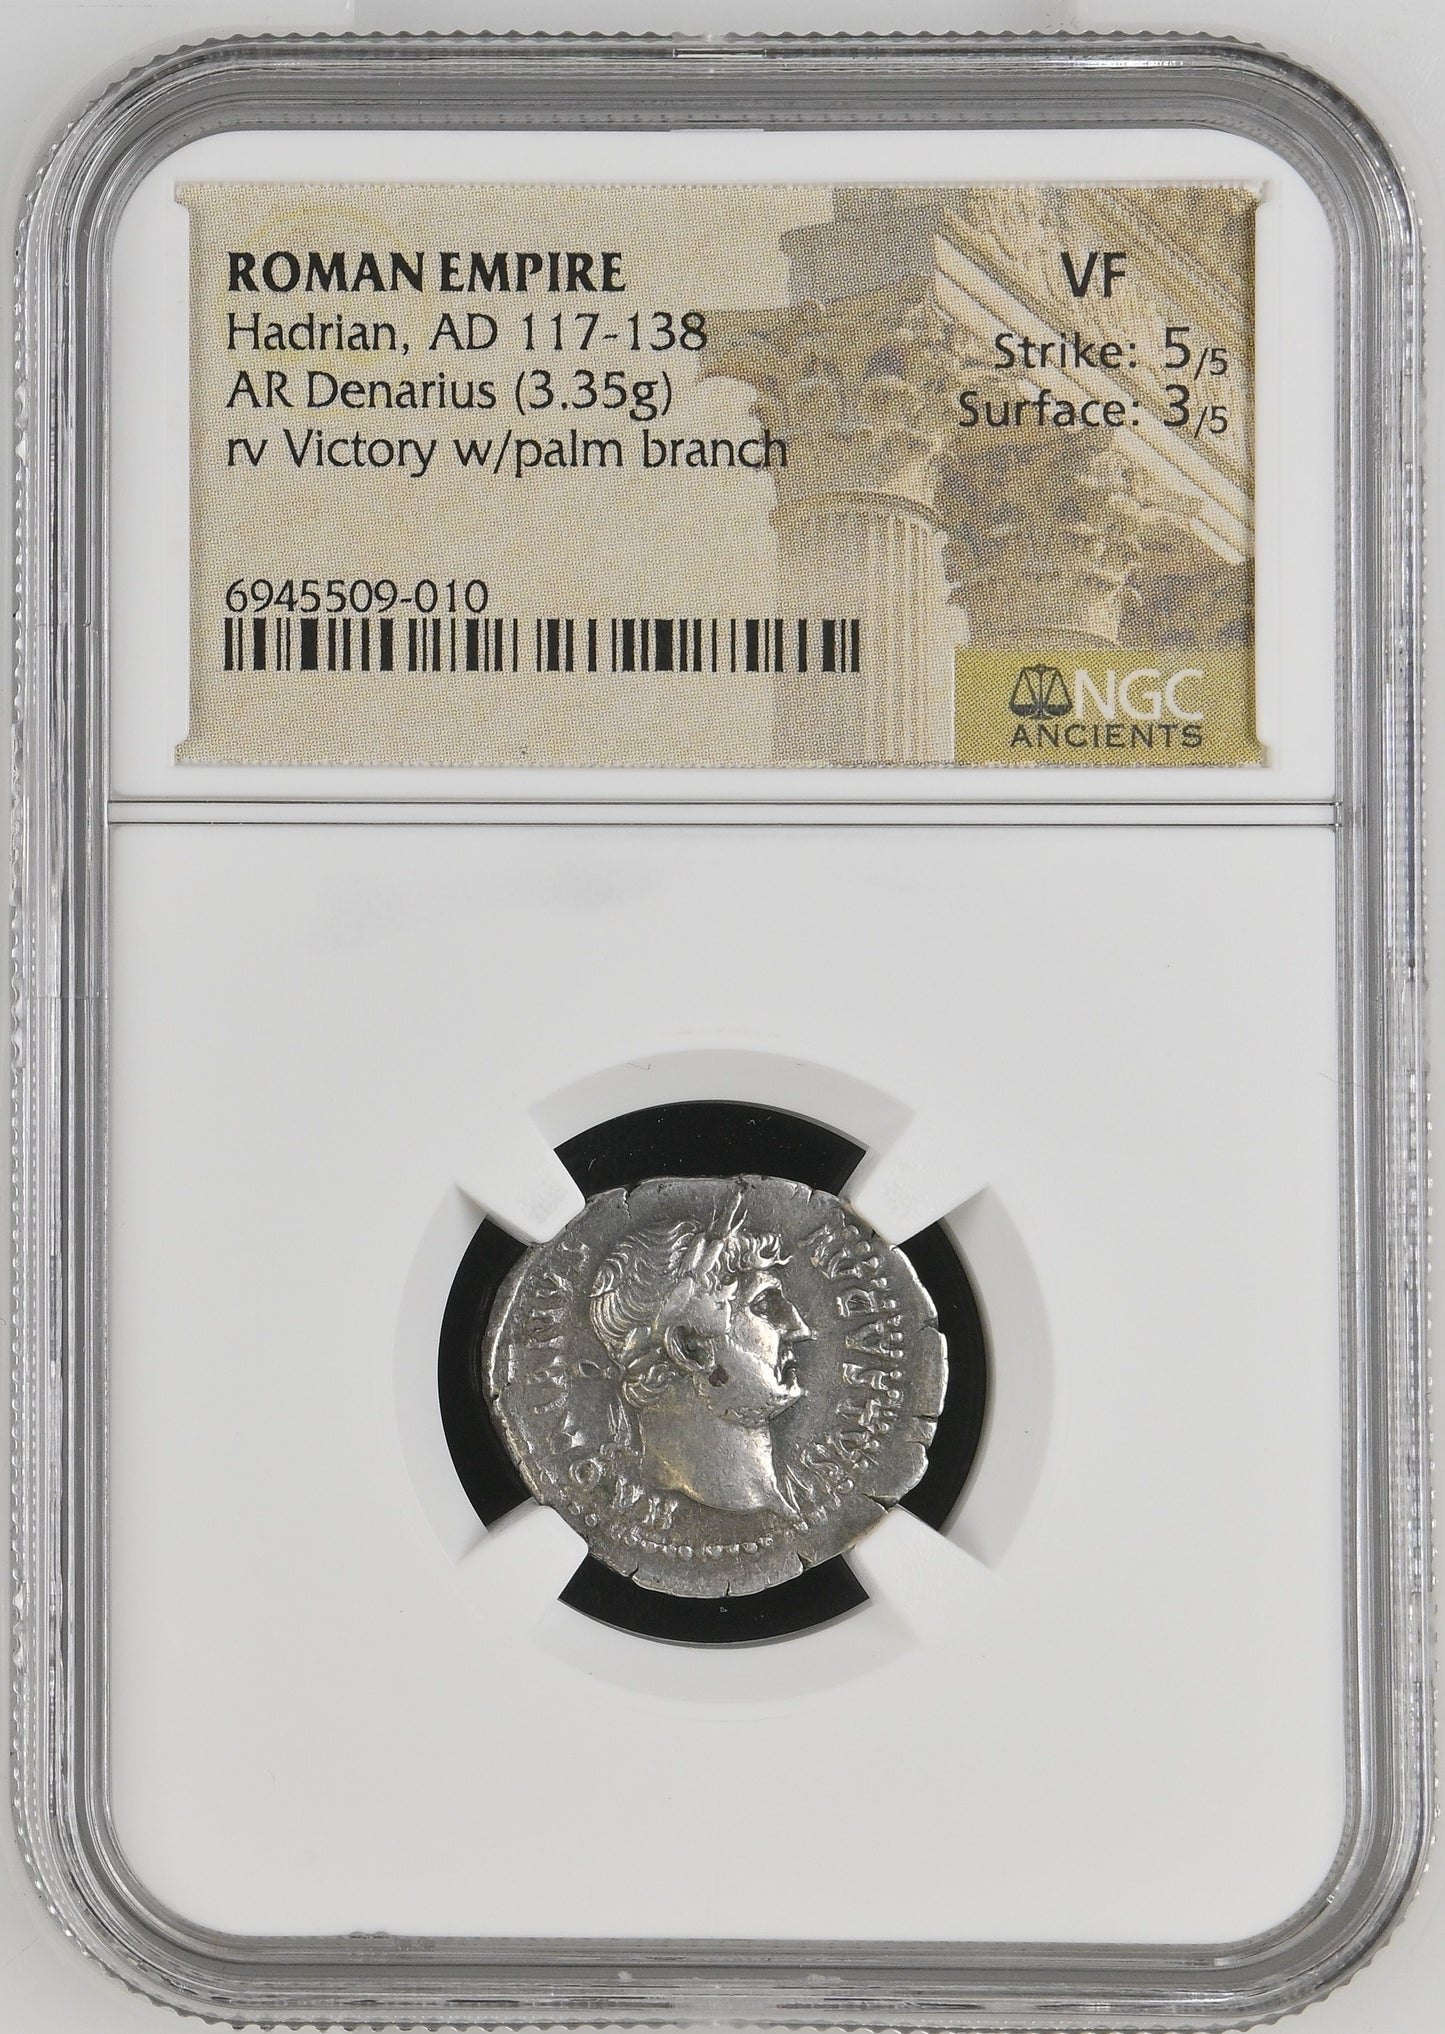 Roman Empire - Hadrian - Silver Denarius - NGC VF - RIC:848